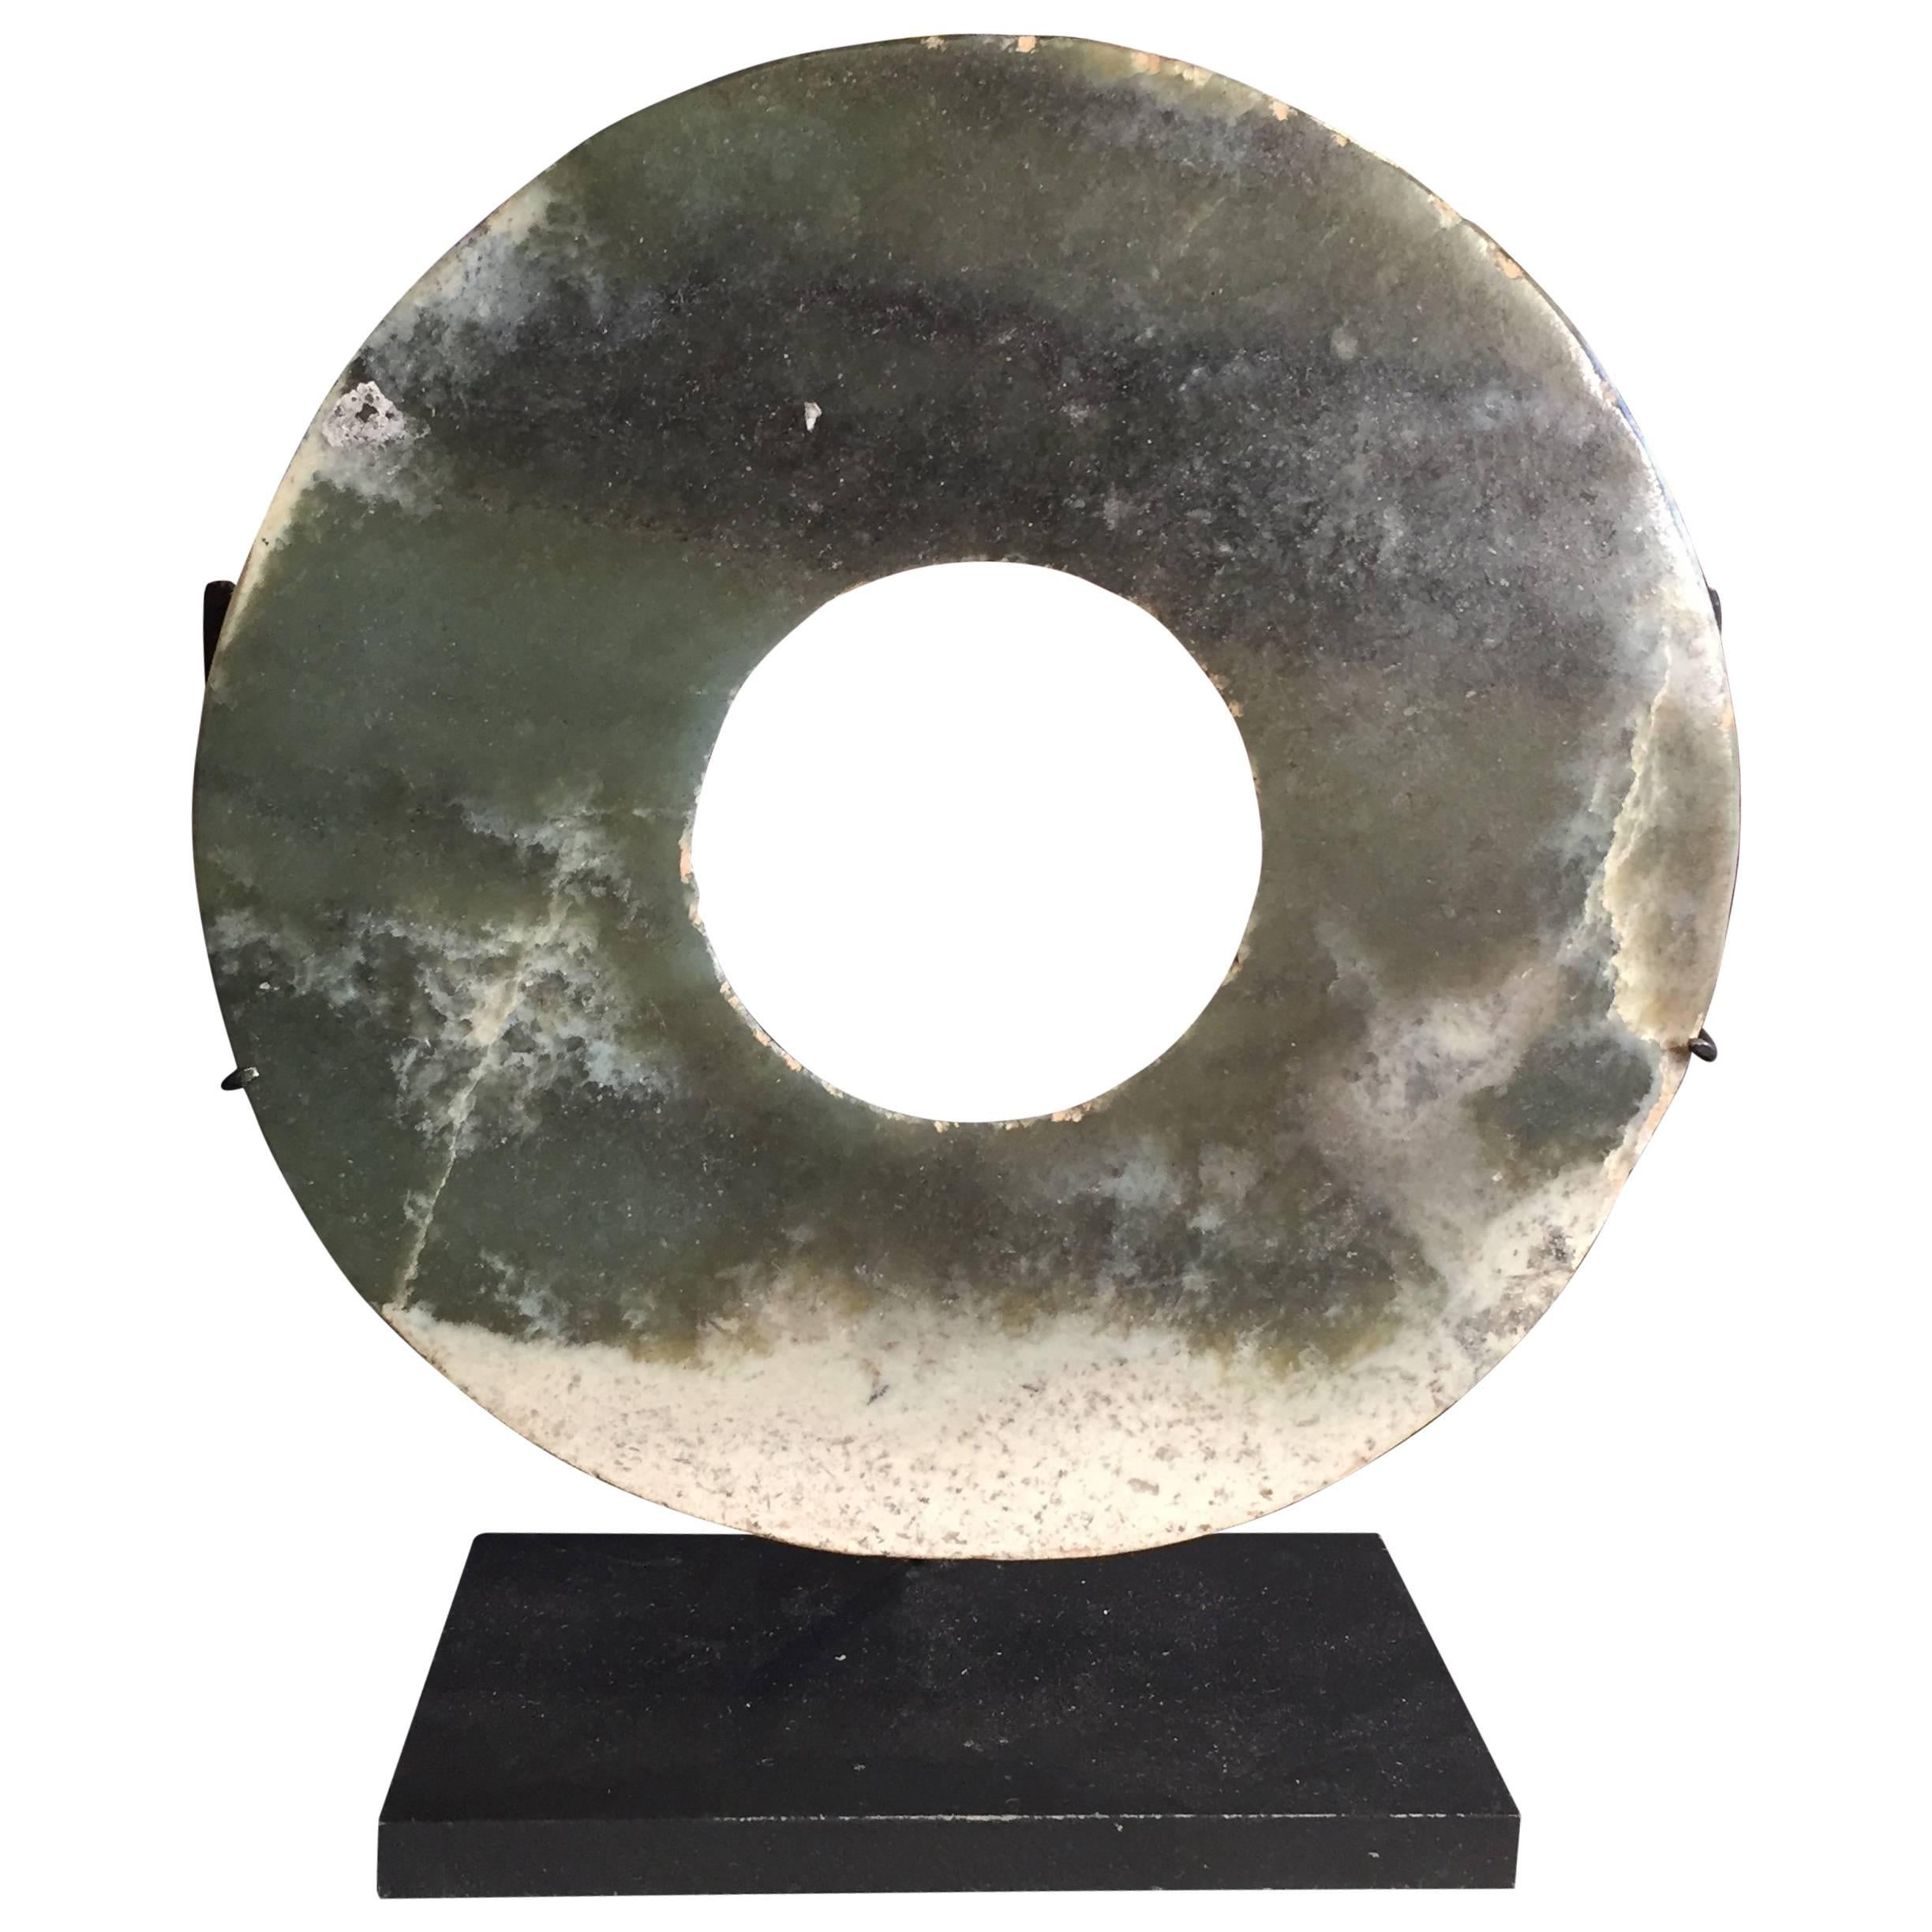 Authentische Jade Bi Disc aus dem alten China 4000 Jahre alt